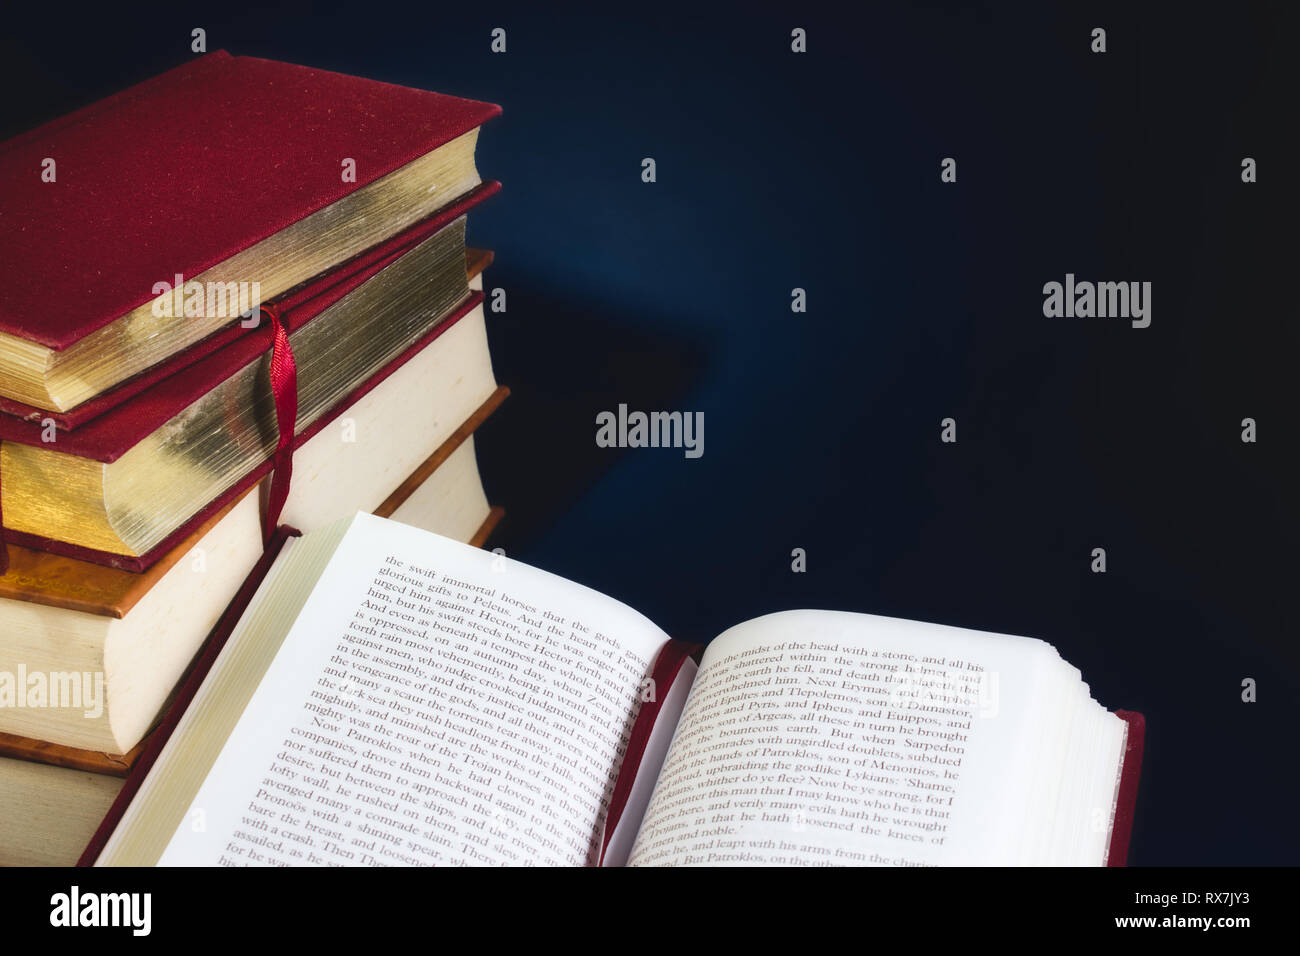 Stapel alter Bücher und ein offenes Buch gegen einen dunkelblauen Hintergrund mit Speicherplatz für eigene Text kopieren Stockfoto